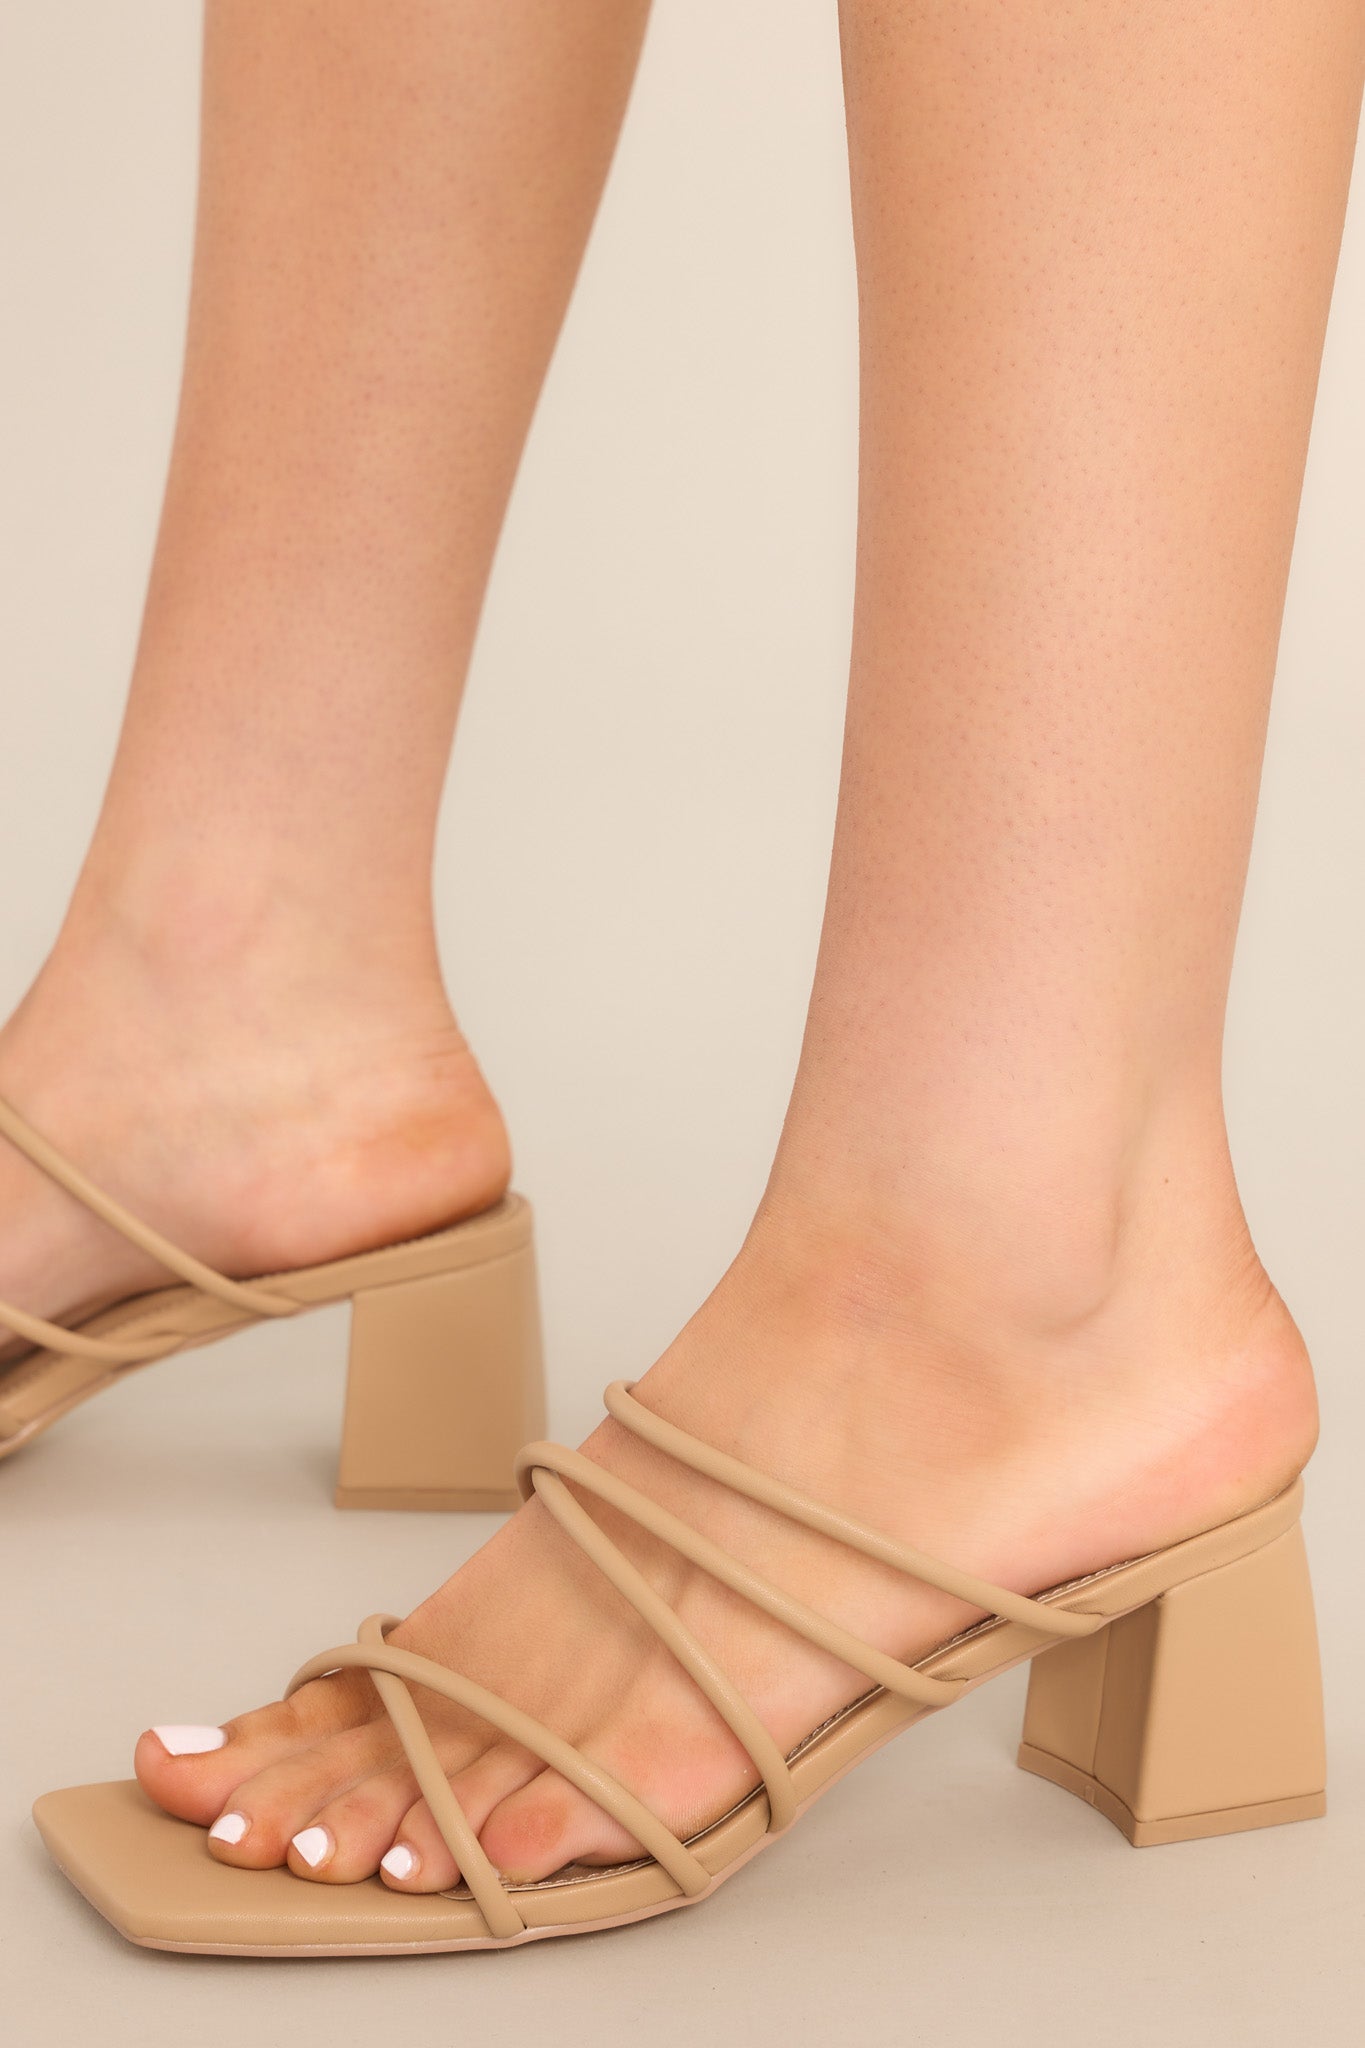 Deia Bootie | Camel Python Leather Ankle Boots | Elizée Shoes